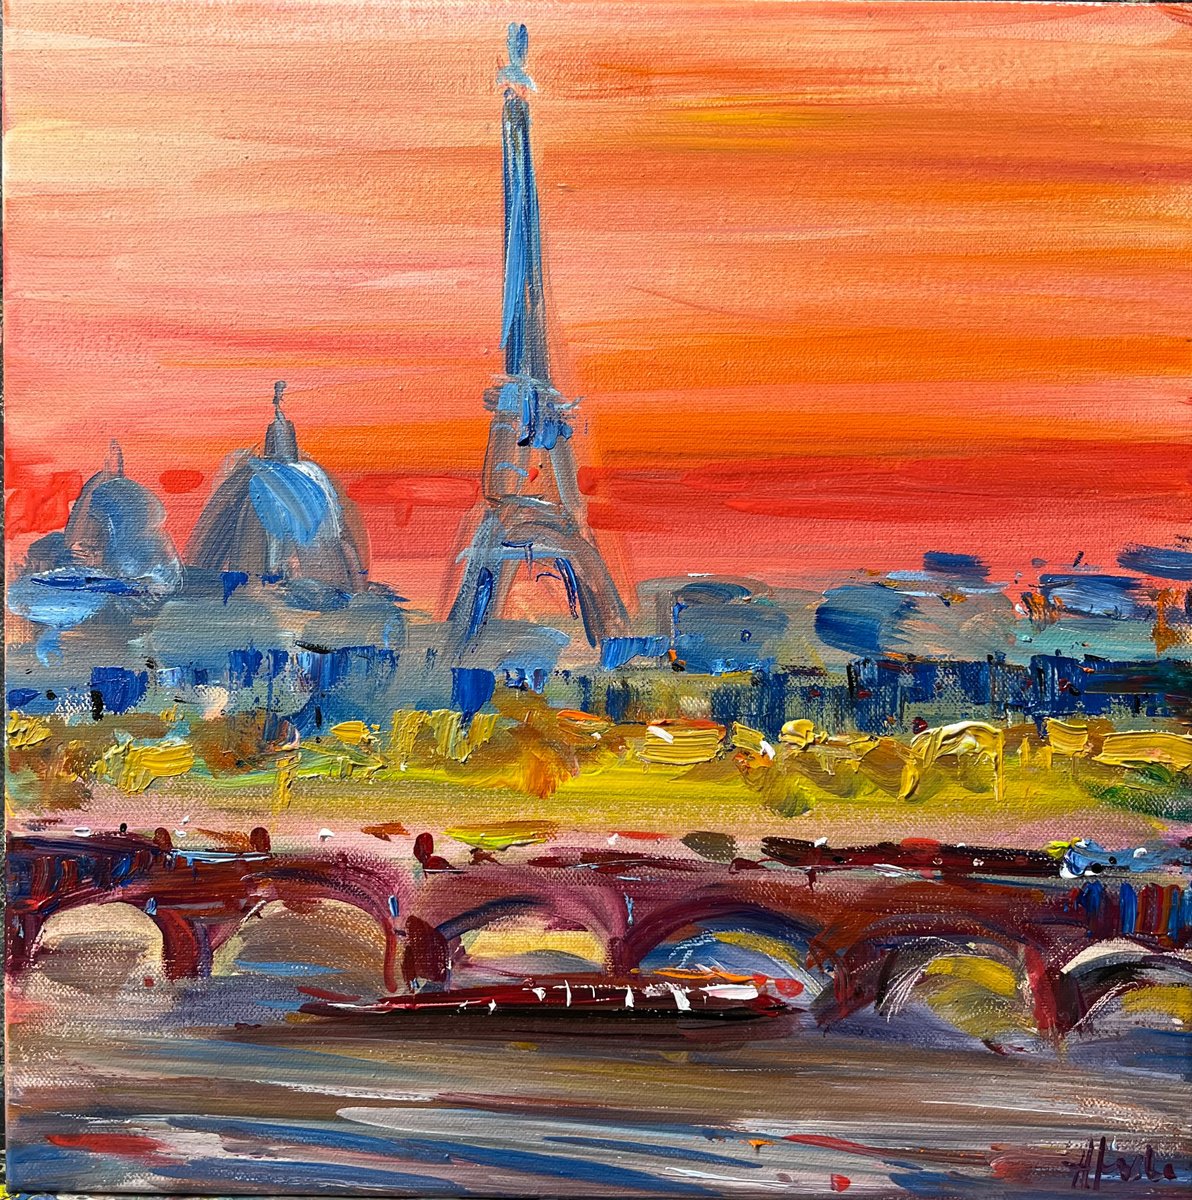 Sunset in Paris by Altin Furxhi